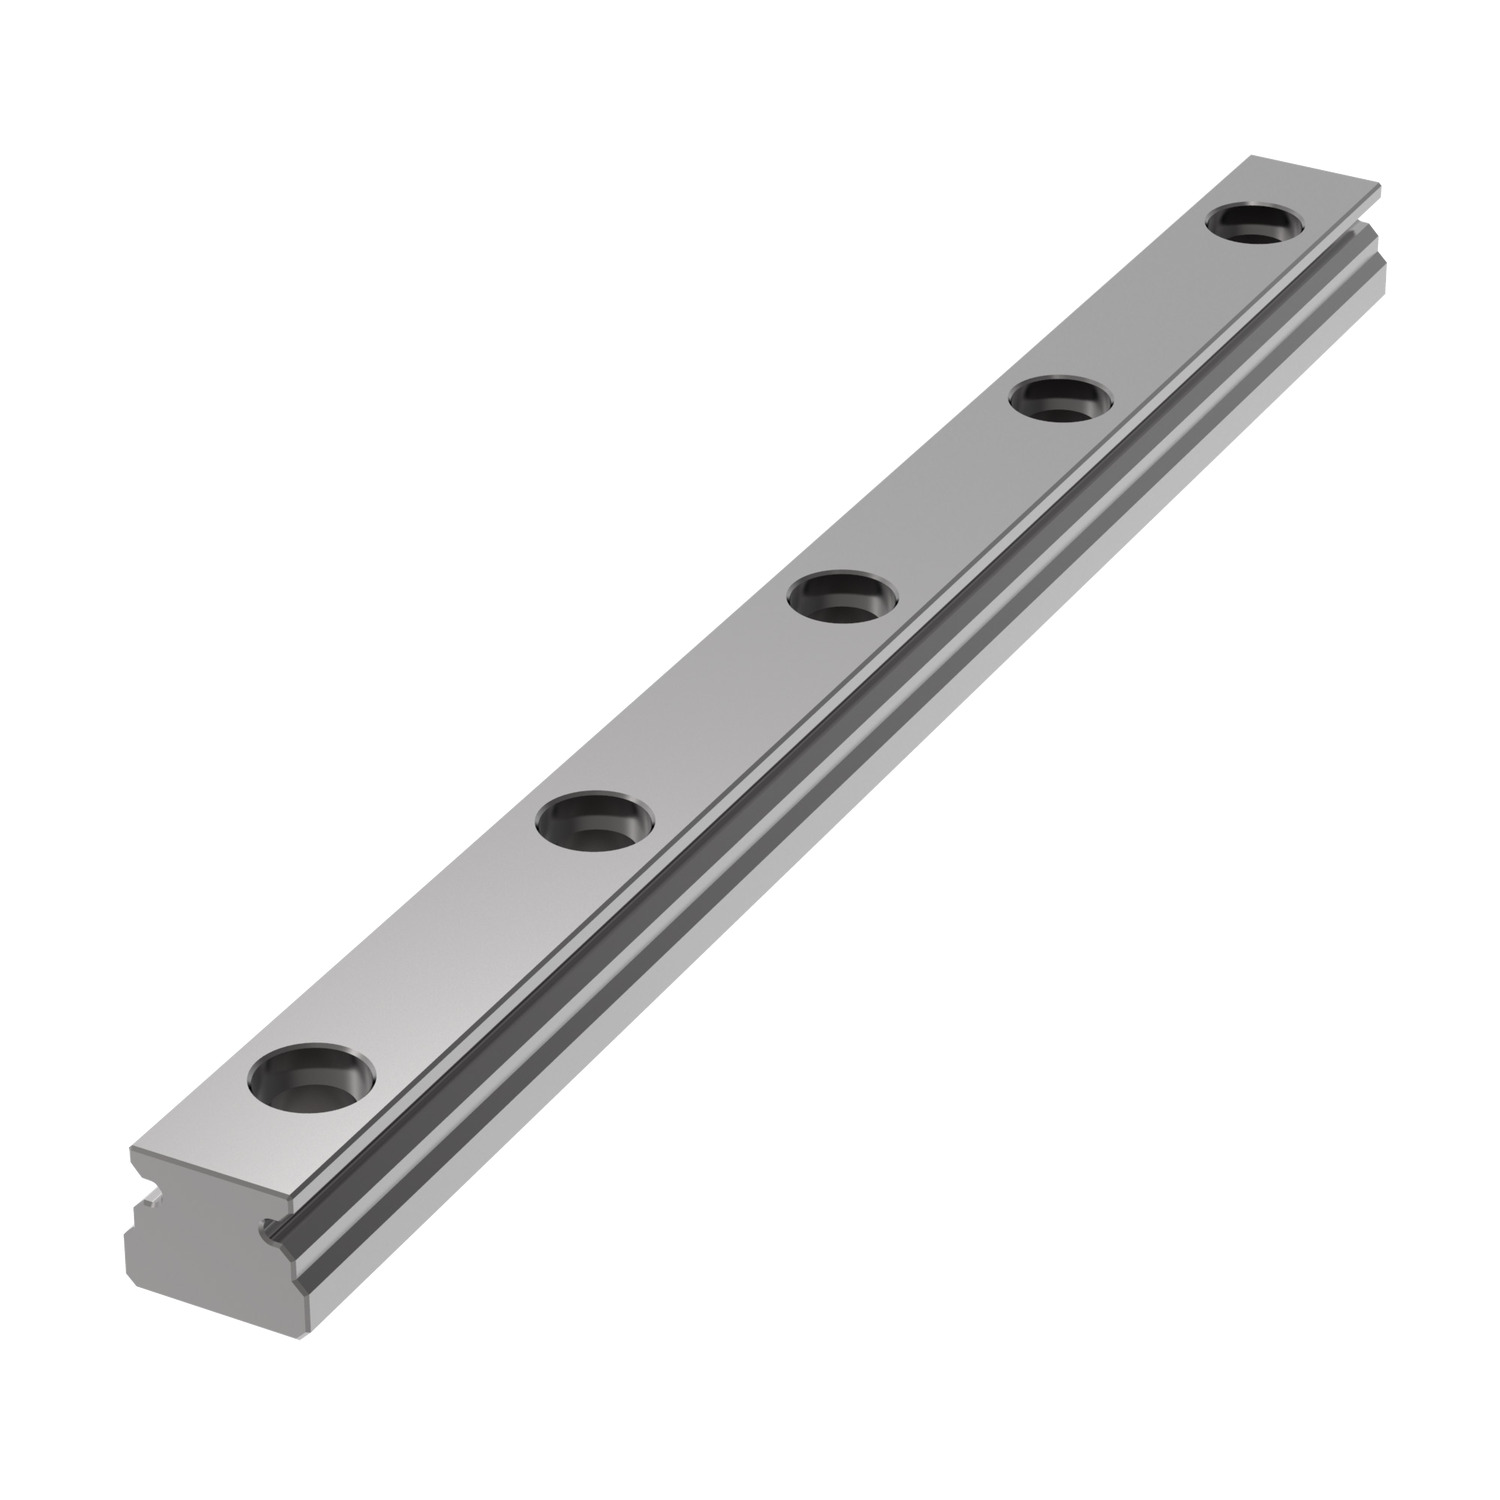 L1010.15 - 15mm Miniature Linear Rail